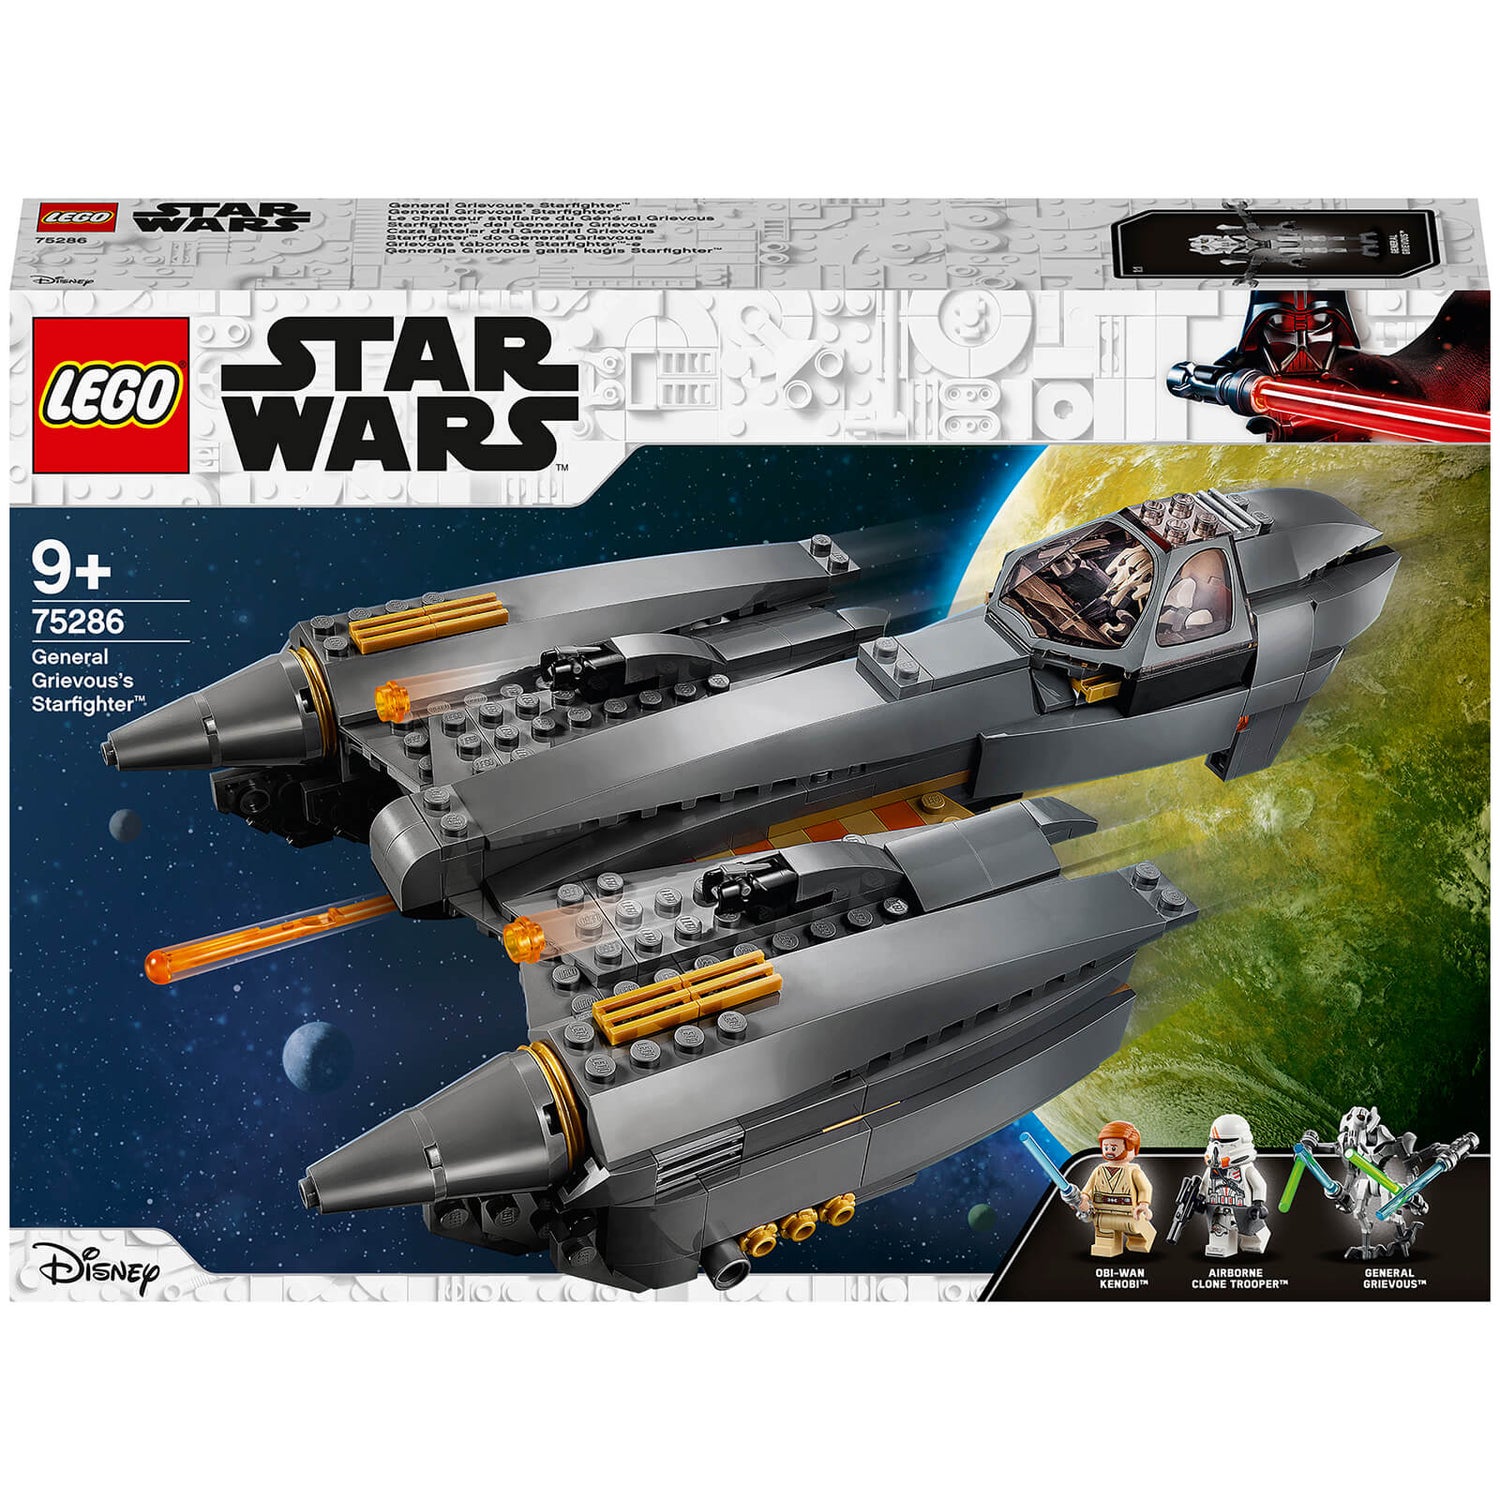 LEGO Star Wars: Generaal Grievous's Starfighter set (75286)